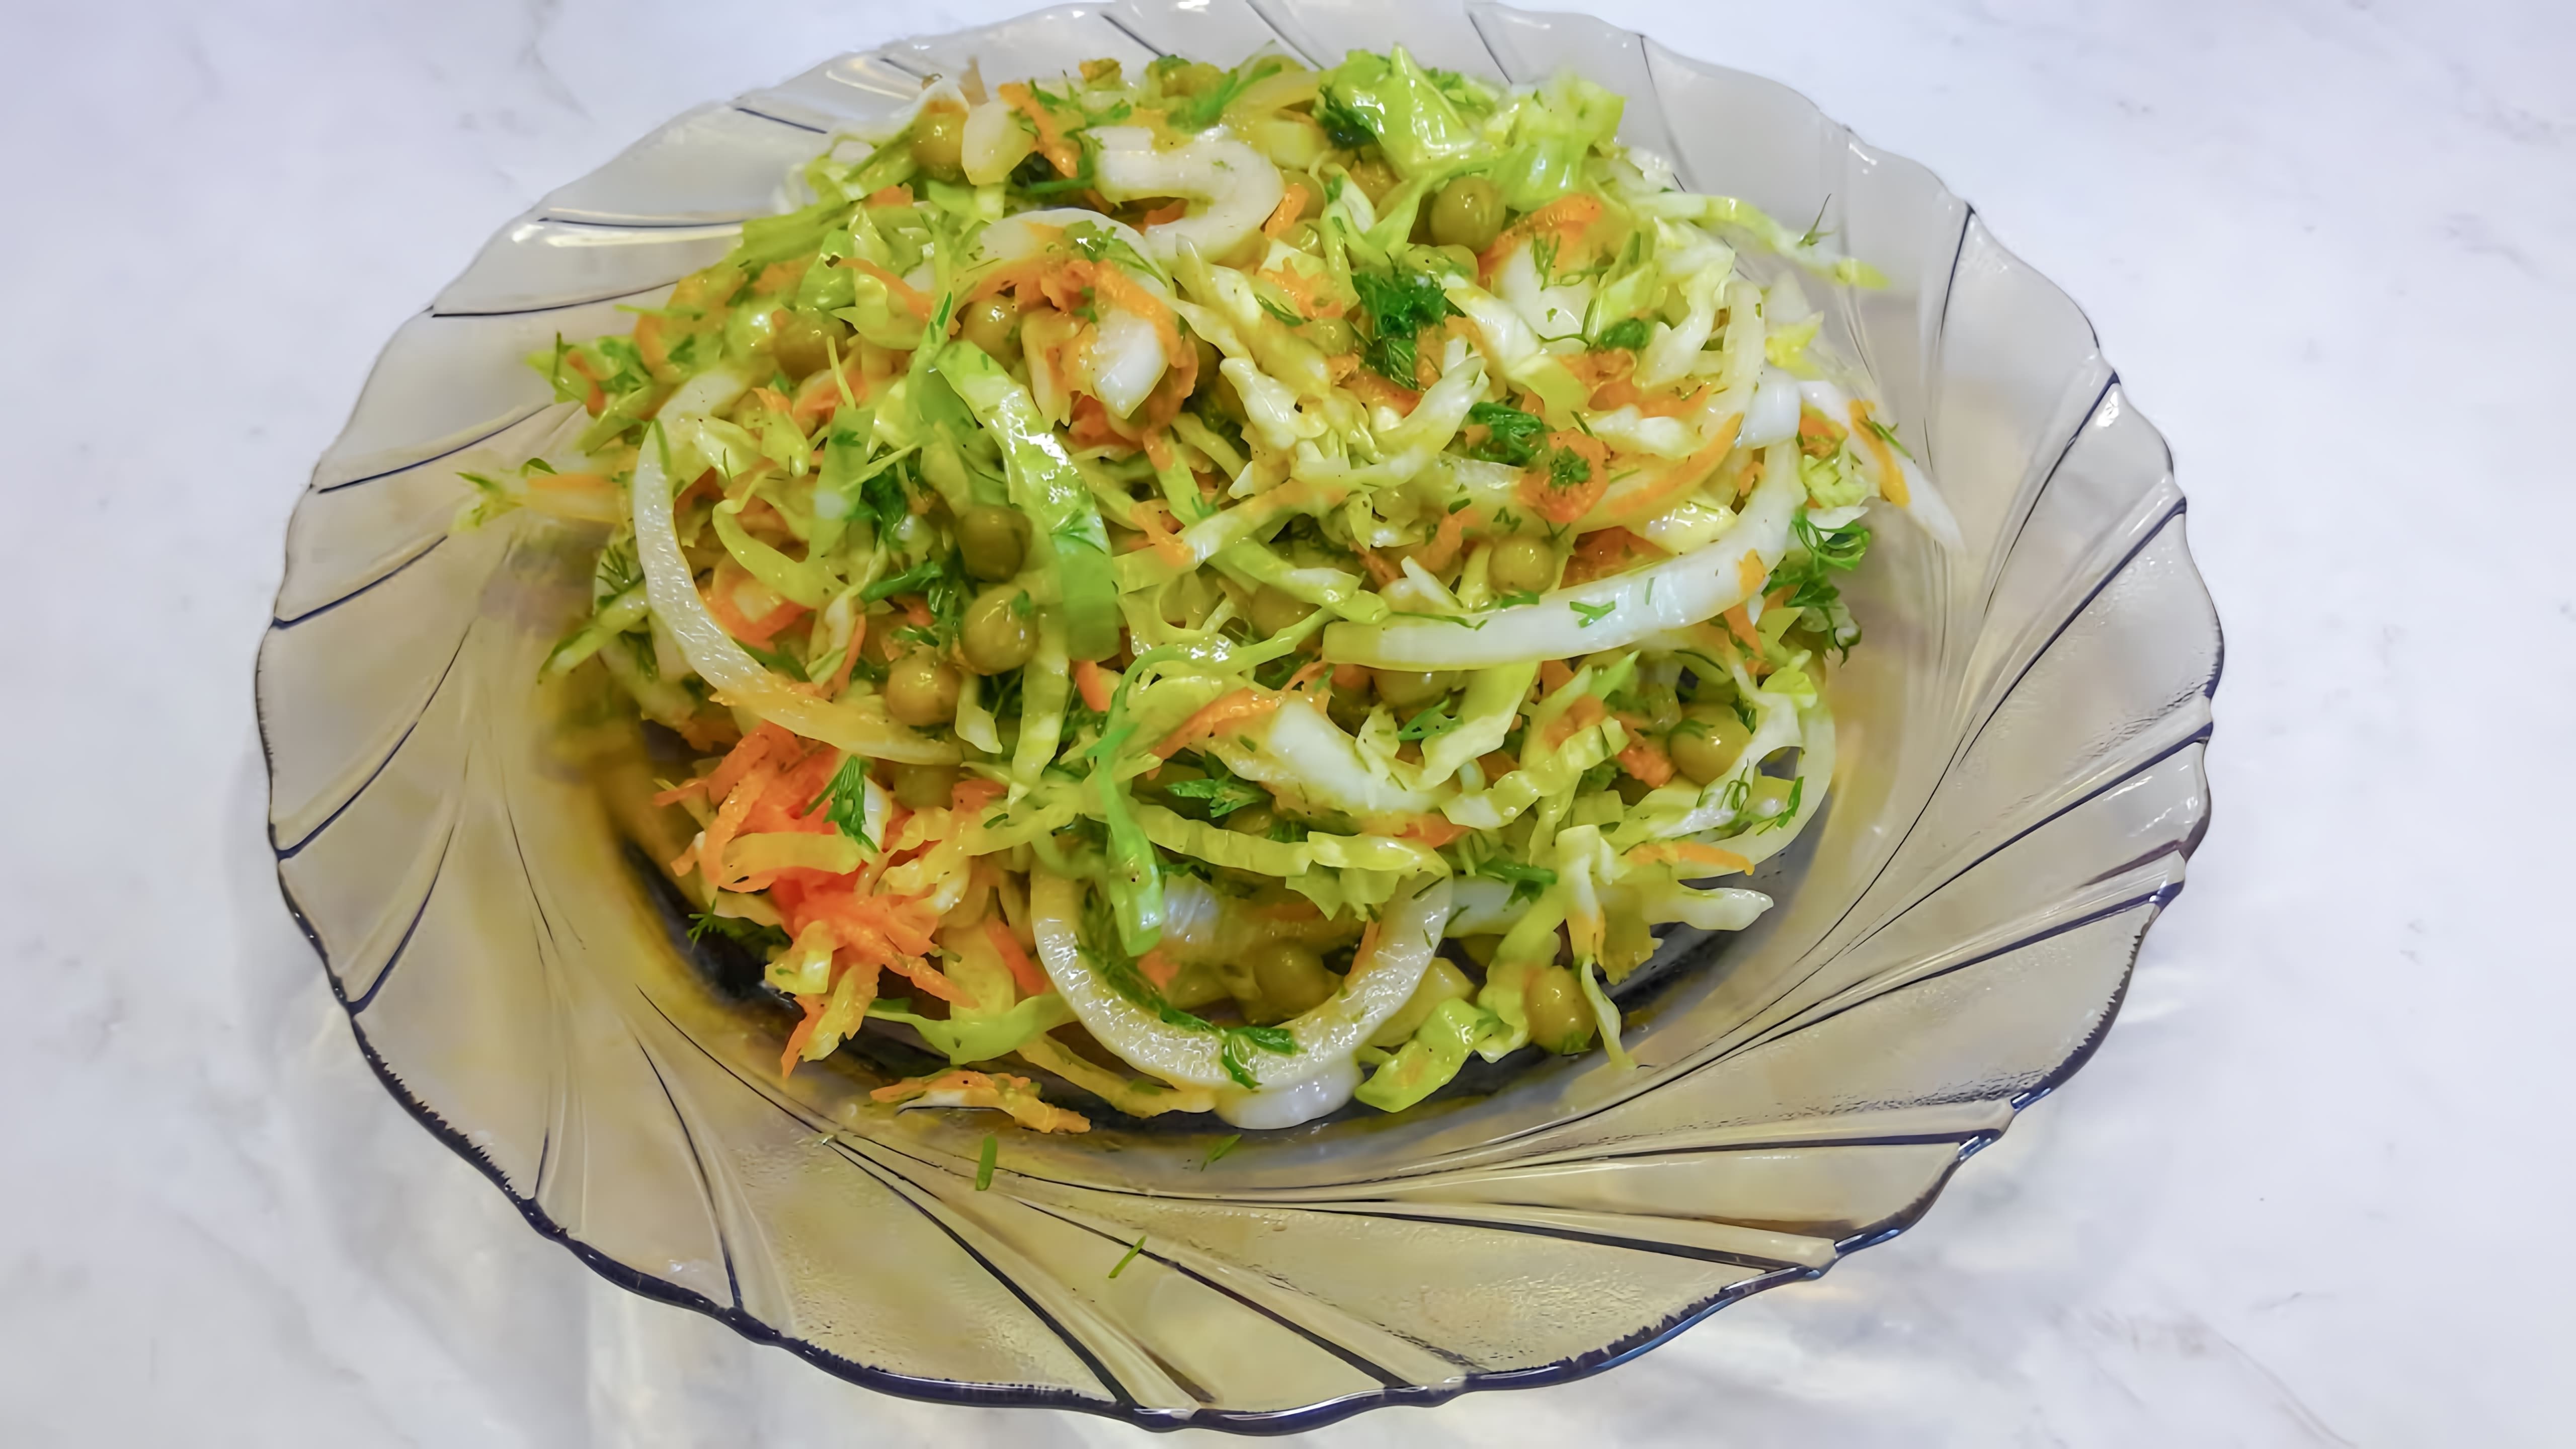 Салат на каждый день! Витаминный салат из свежей капусты/ Простой салат/Fresh Cabbage Vitamin Salad - это видео-ролик, который показывает, как приготовить вкусный и полезный салат из свежей капусты